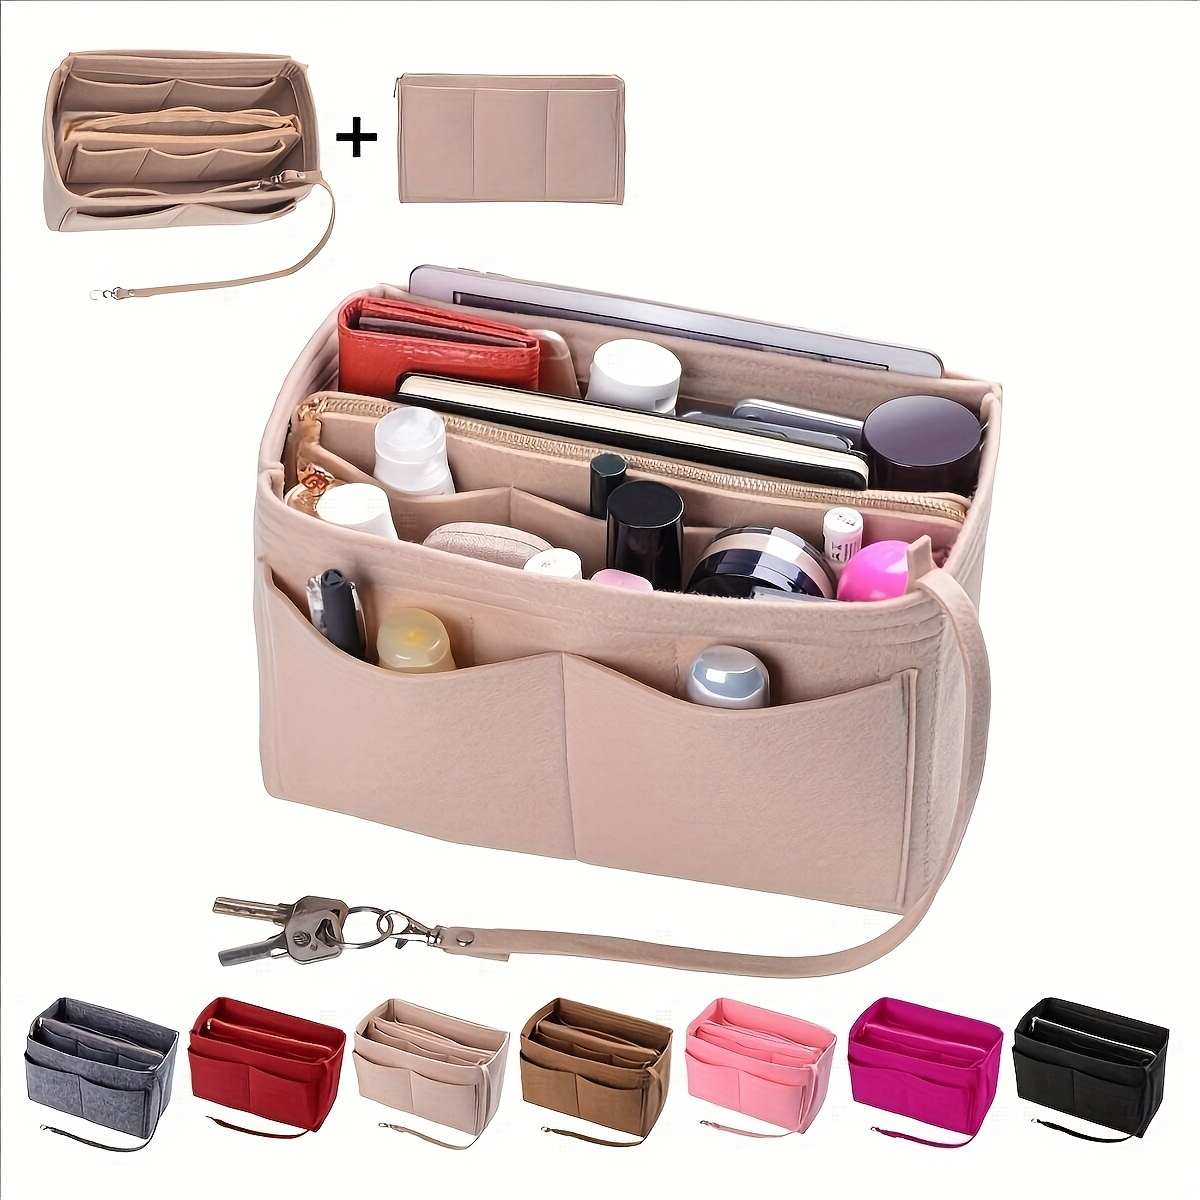 Glitzy Purse Organizer sewing pattern - Sew Modern Bags | Purse organizer  pattern, Diy purse, Handbag organization